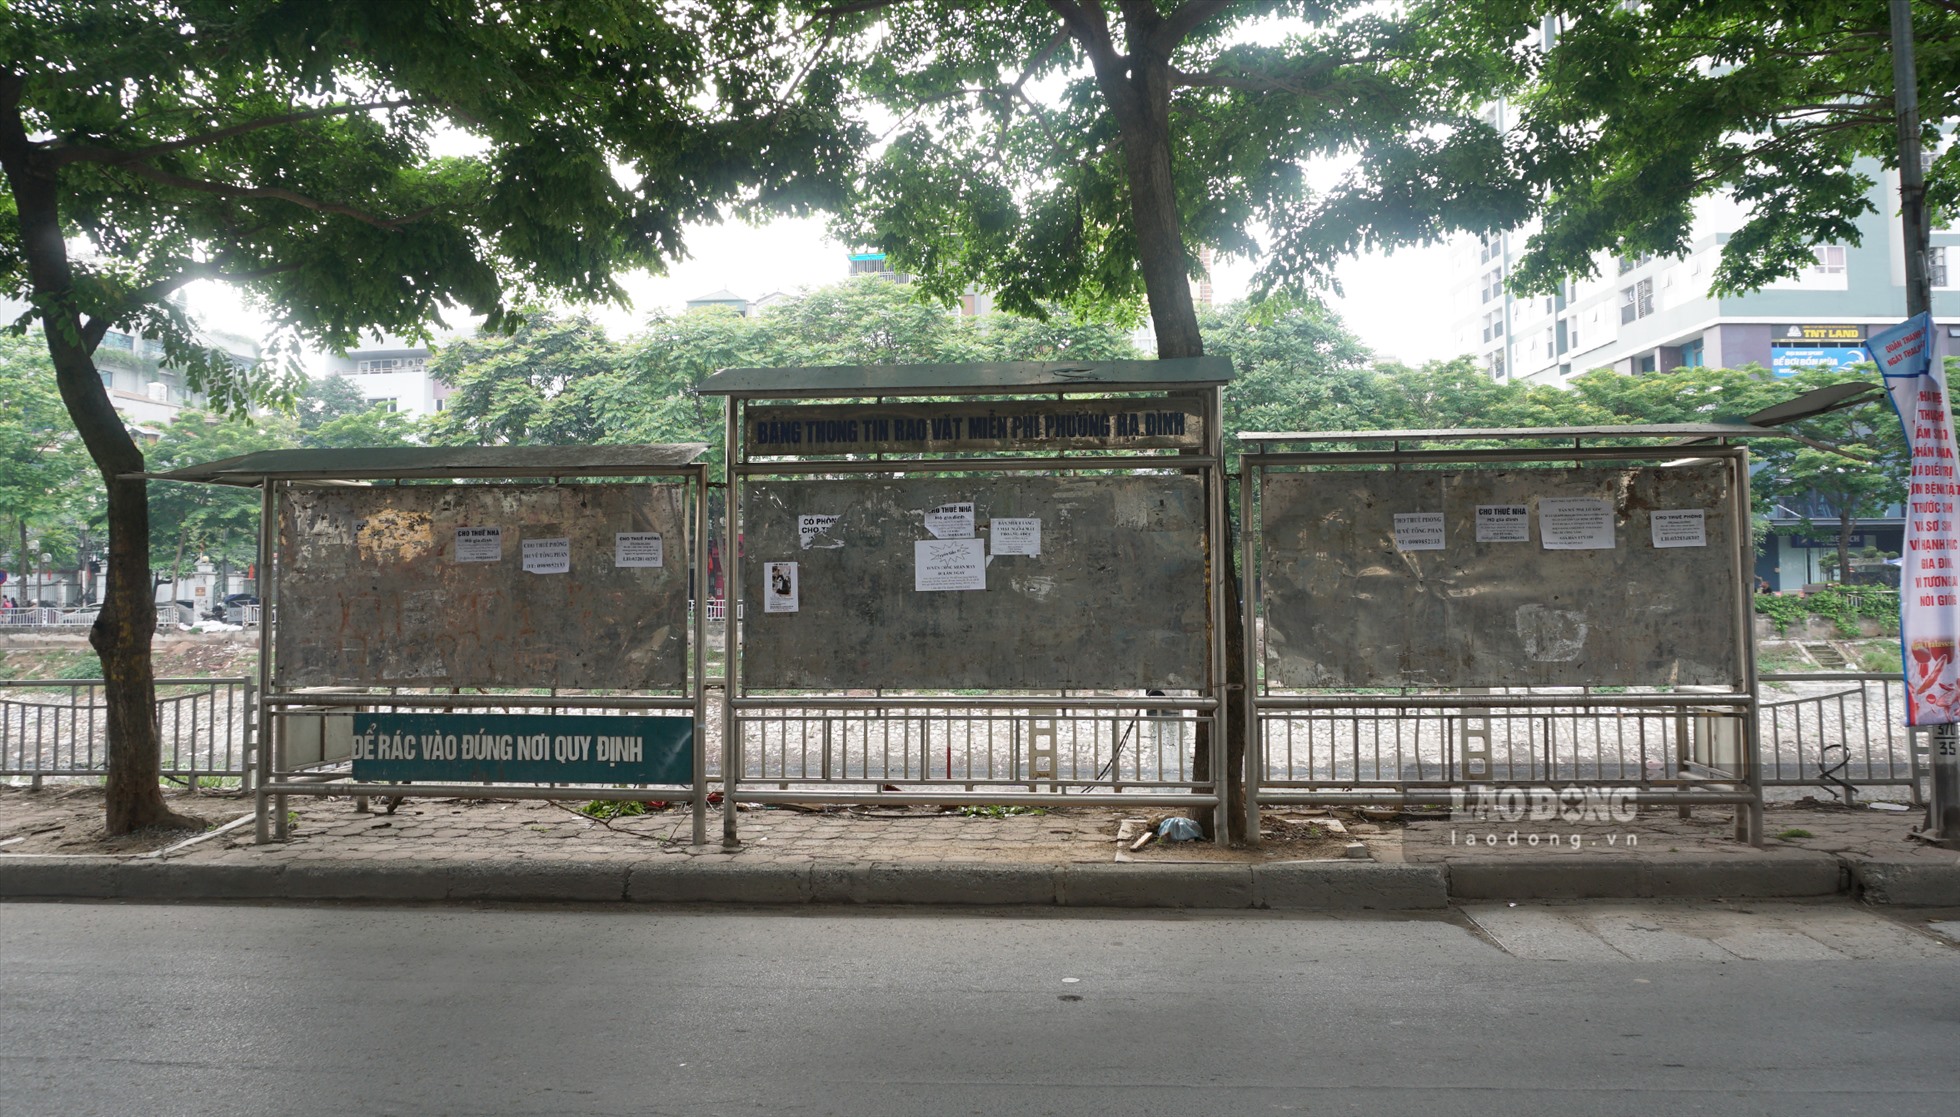 Biển quảng cáo rao vặt trên đường Khương Đình (quận Thanh Xuân) cũng trong tình trạng xuống cấp.